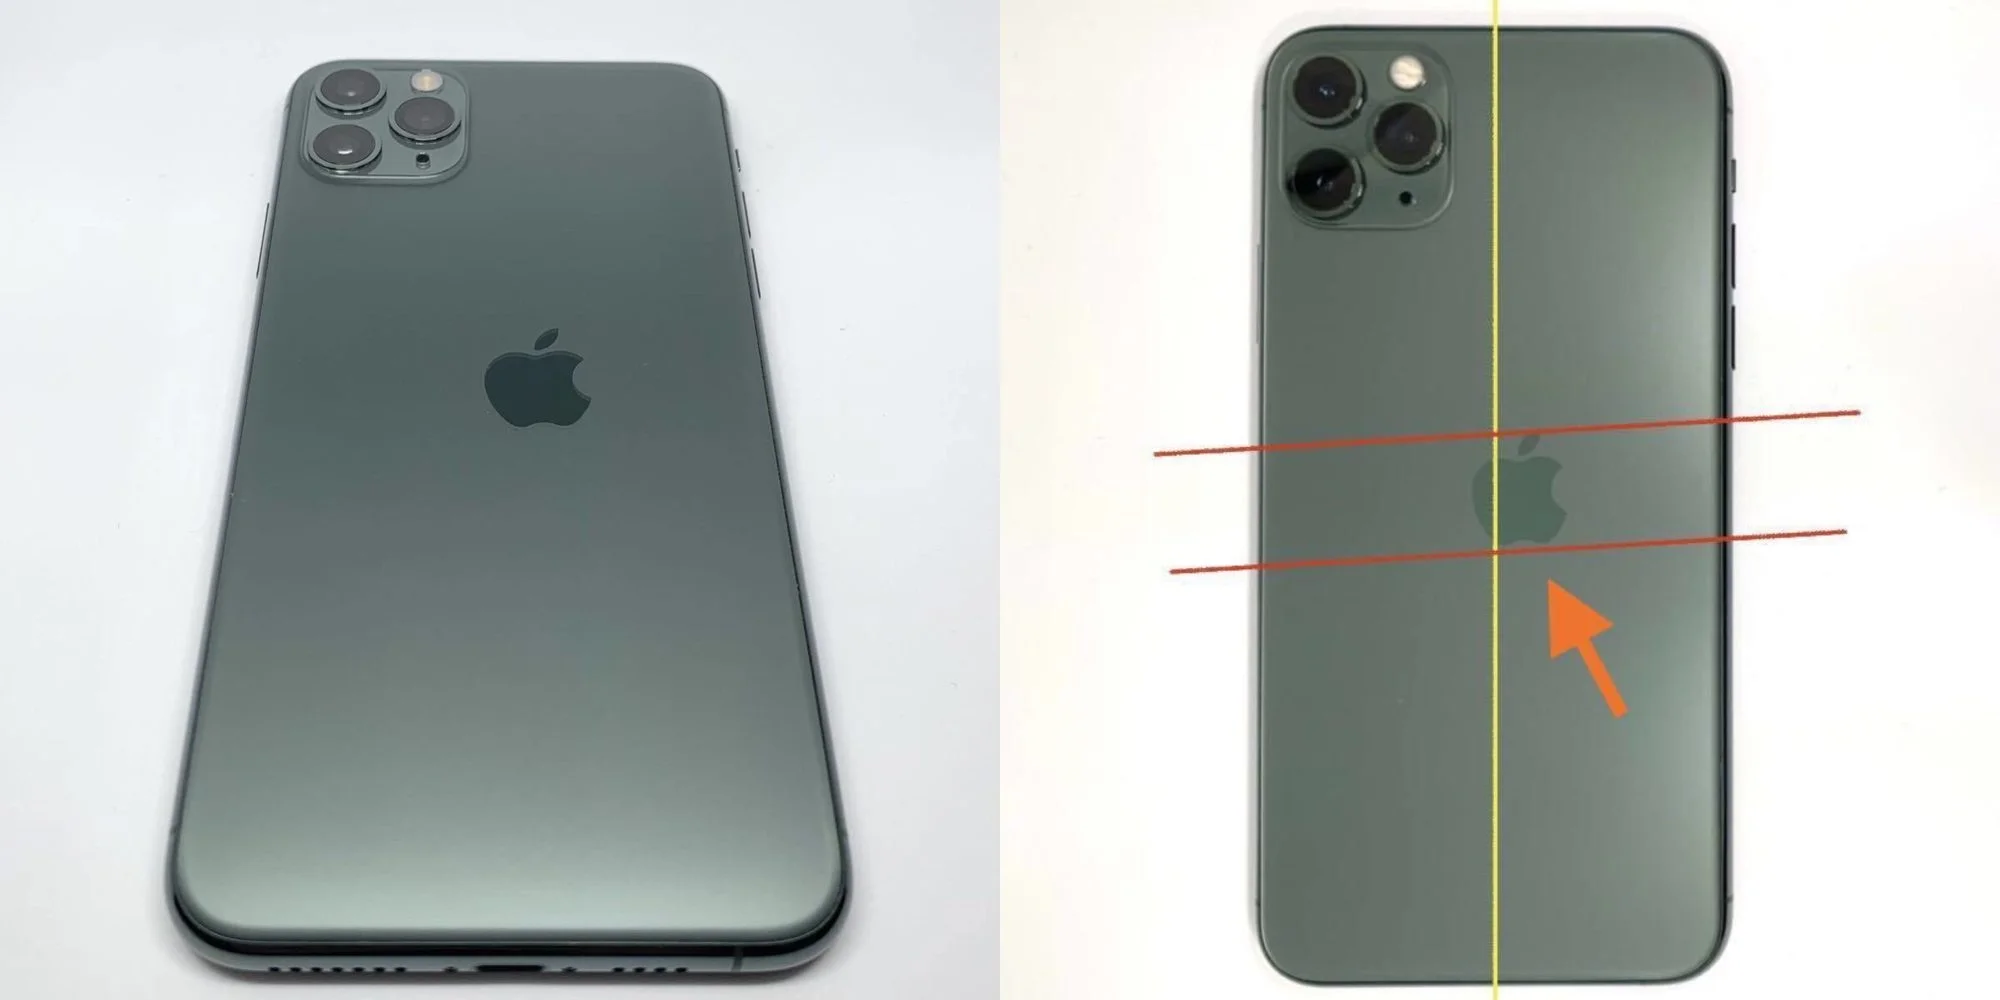 Бракованный iPhone 11 Pro с кривым «яблоком» продали за 200 000 рублей - фото 1